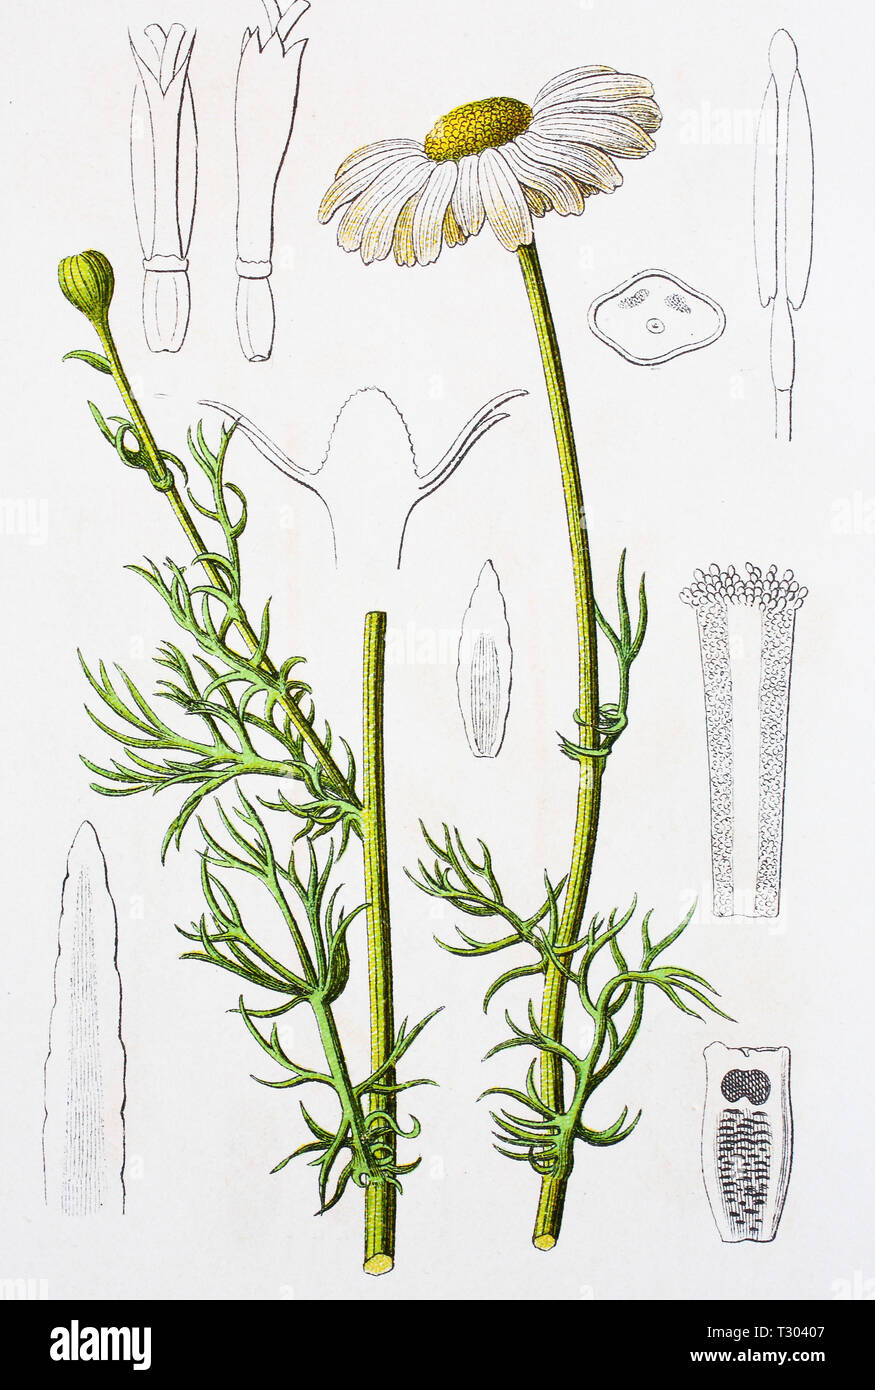 Miglioramento digitale la riproduzione di un'illustrazione di, Kamille Geruchlose, Tripleurospermum inodorum, da una stampa originale del XIX secolo Foto Stock